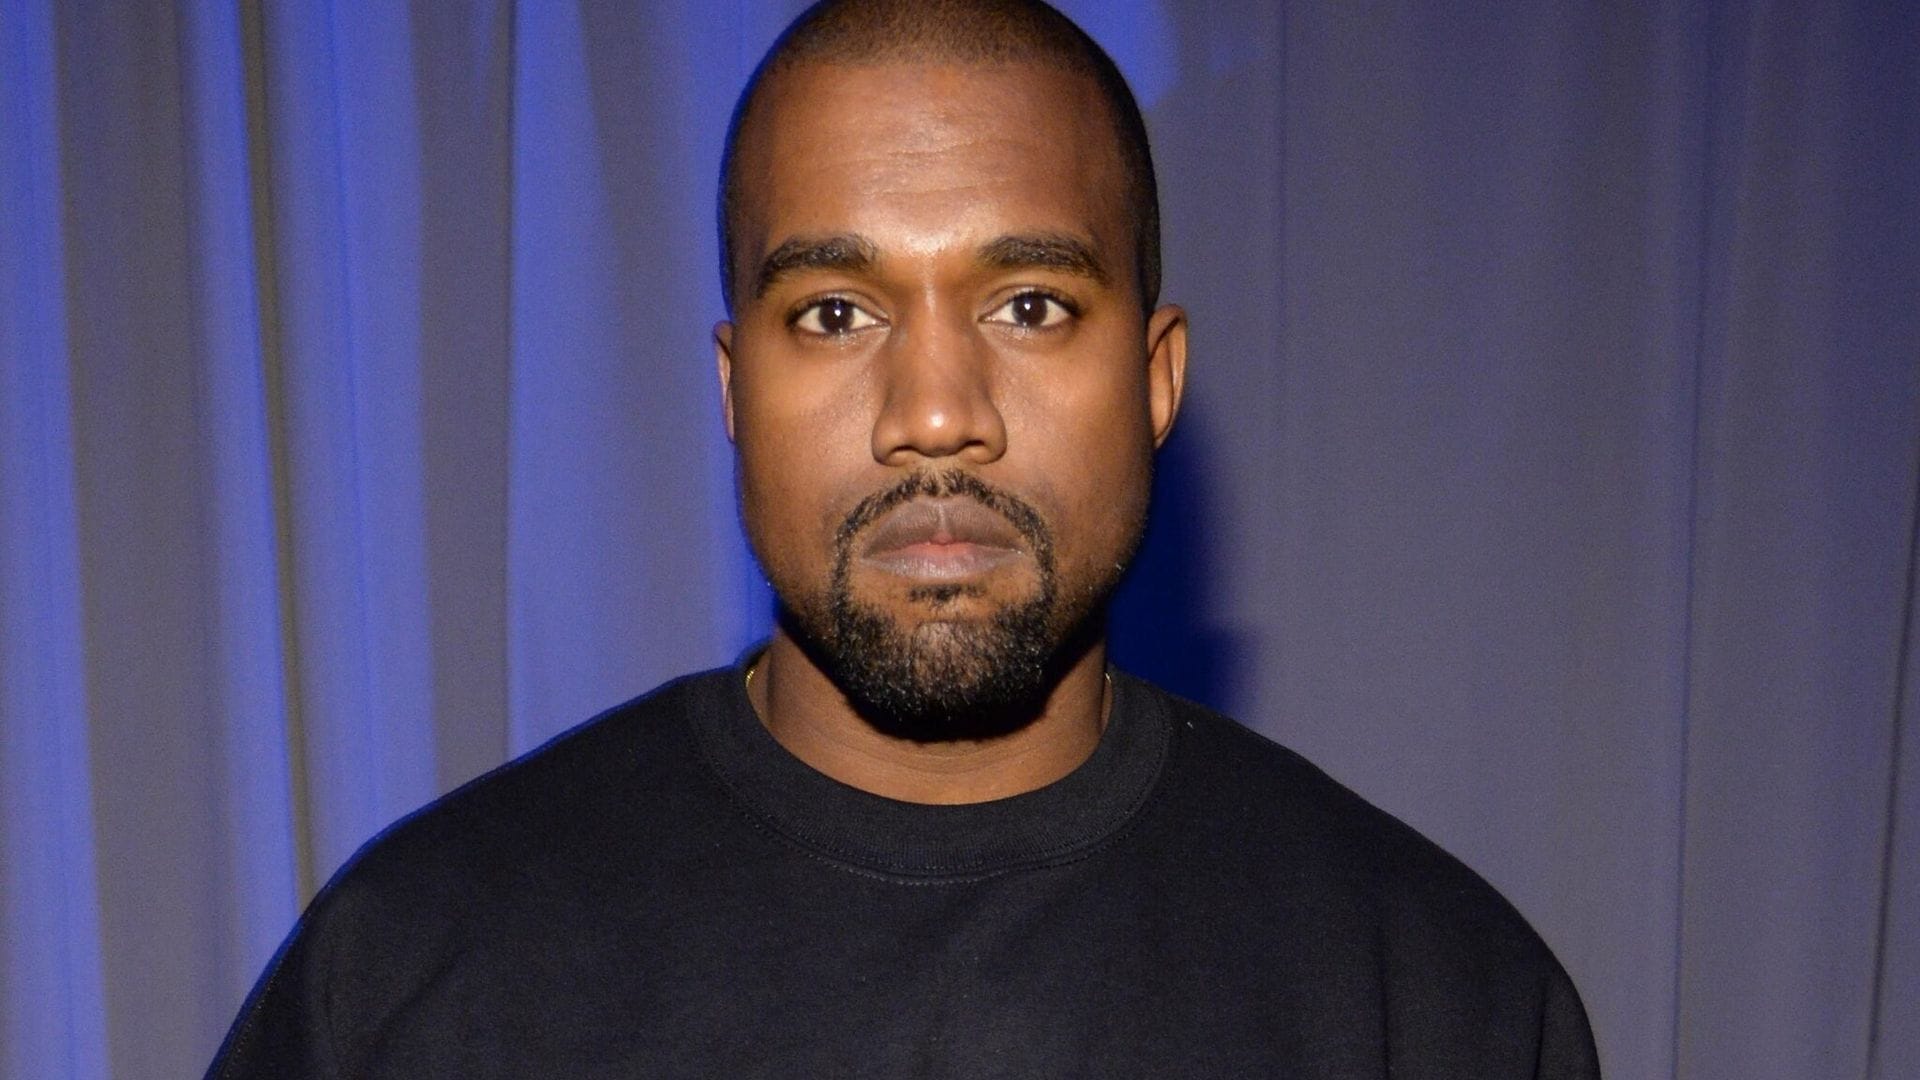 Kanye West enfrenta una demanda millonaria interpuesta por la familia de George Floyd